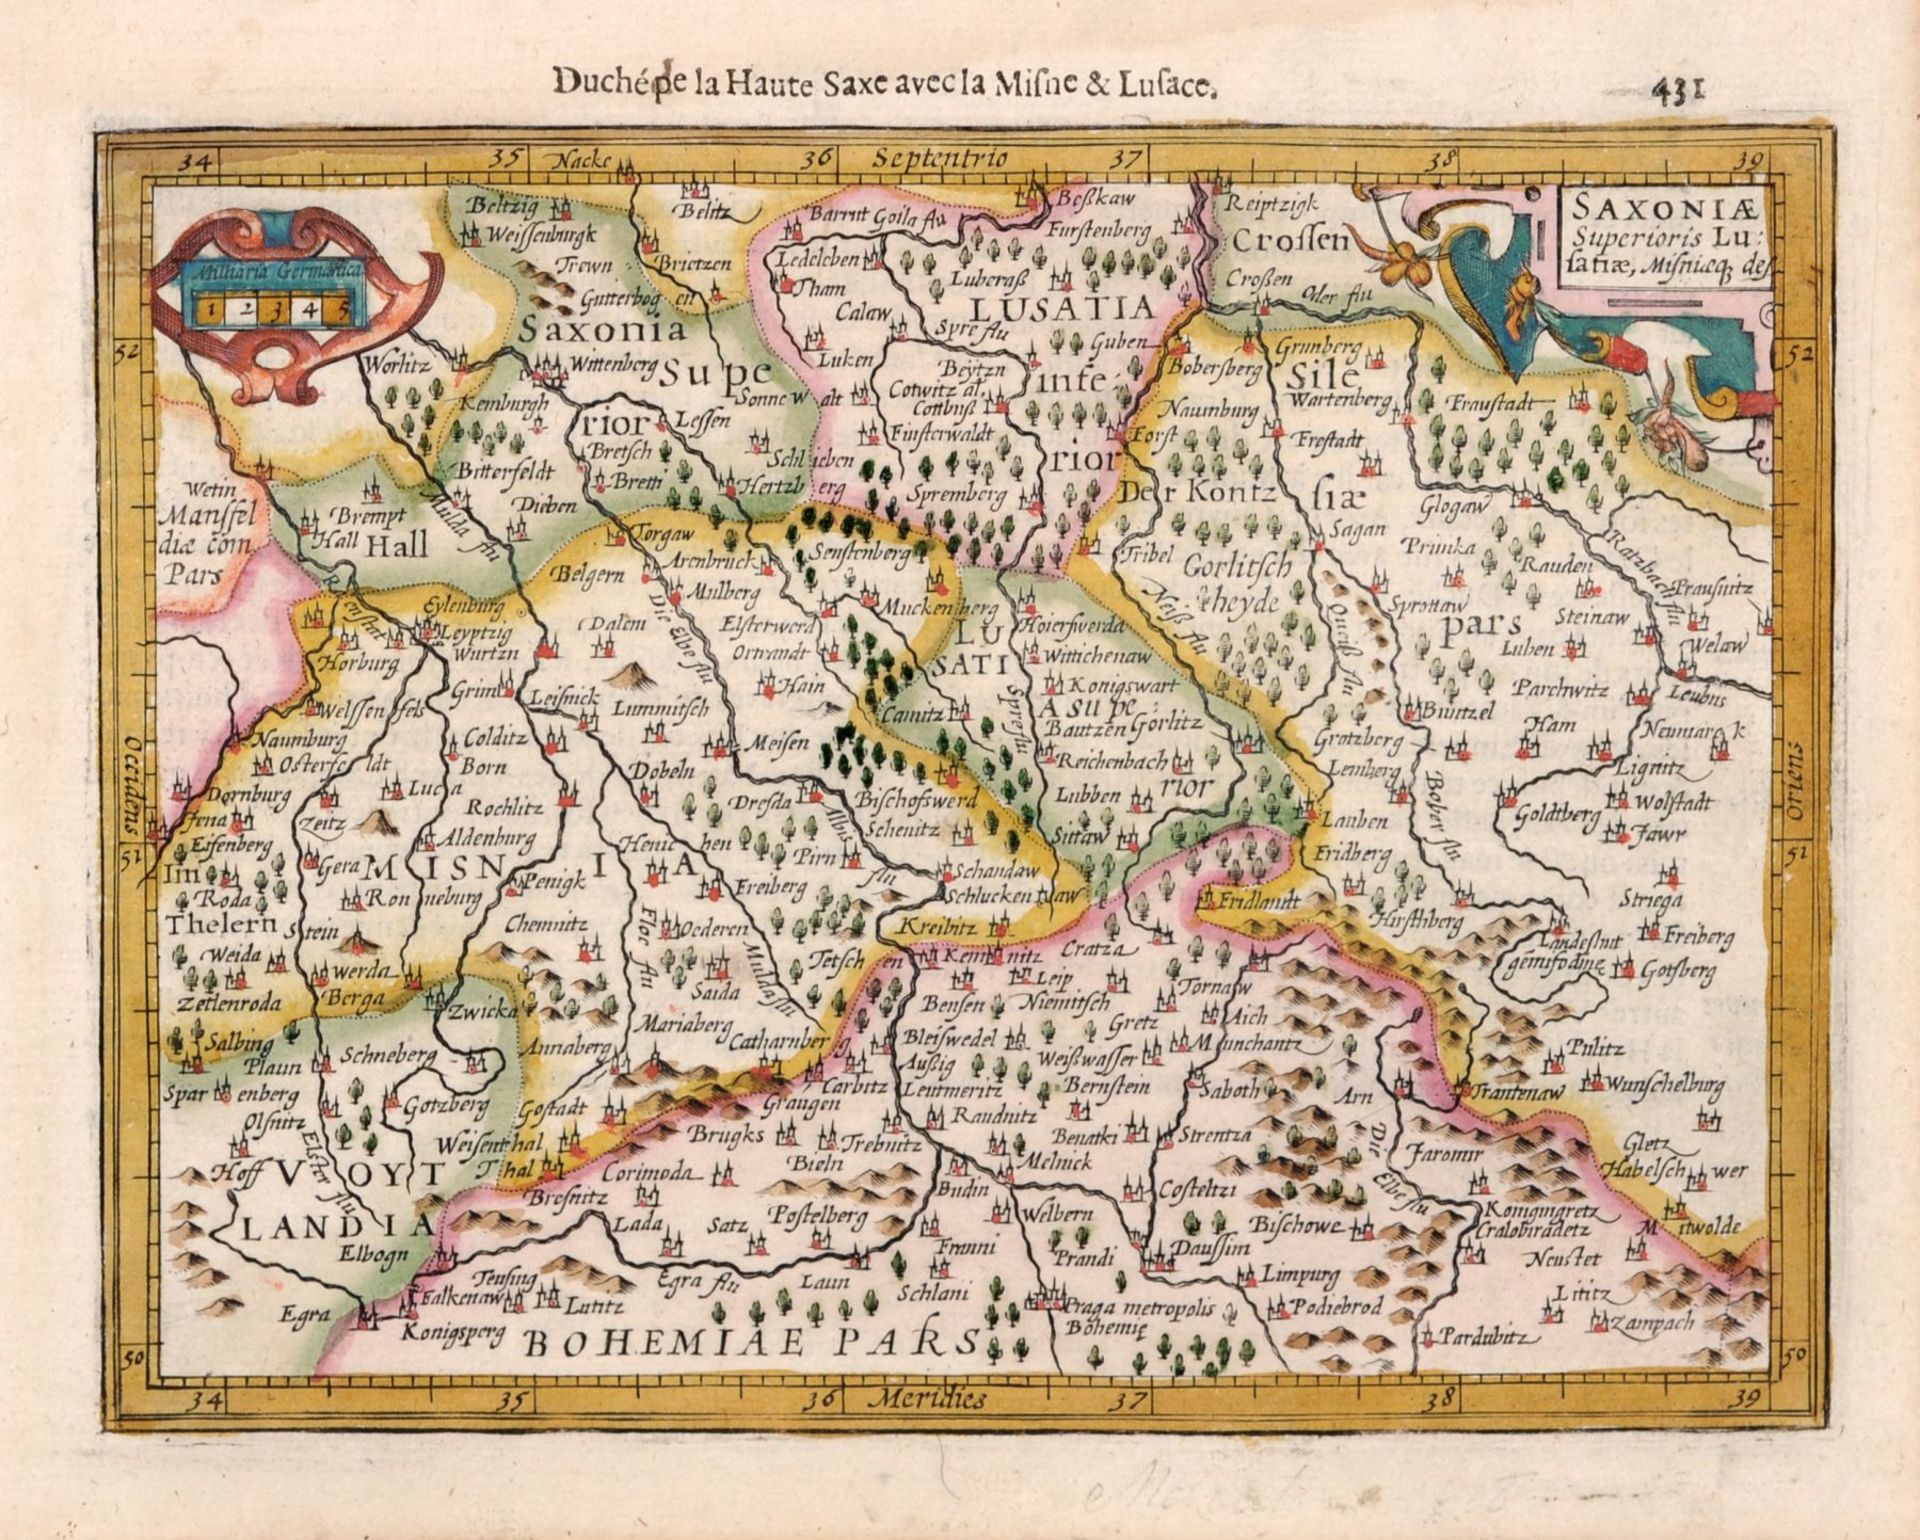 Verschiedene Stecher, Sechs Karten zu Sachsen und der Lausitz. 16. Jh. -18. Jh. Abraham Ortelius